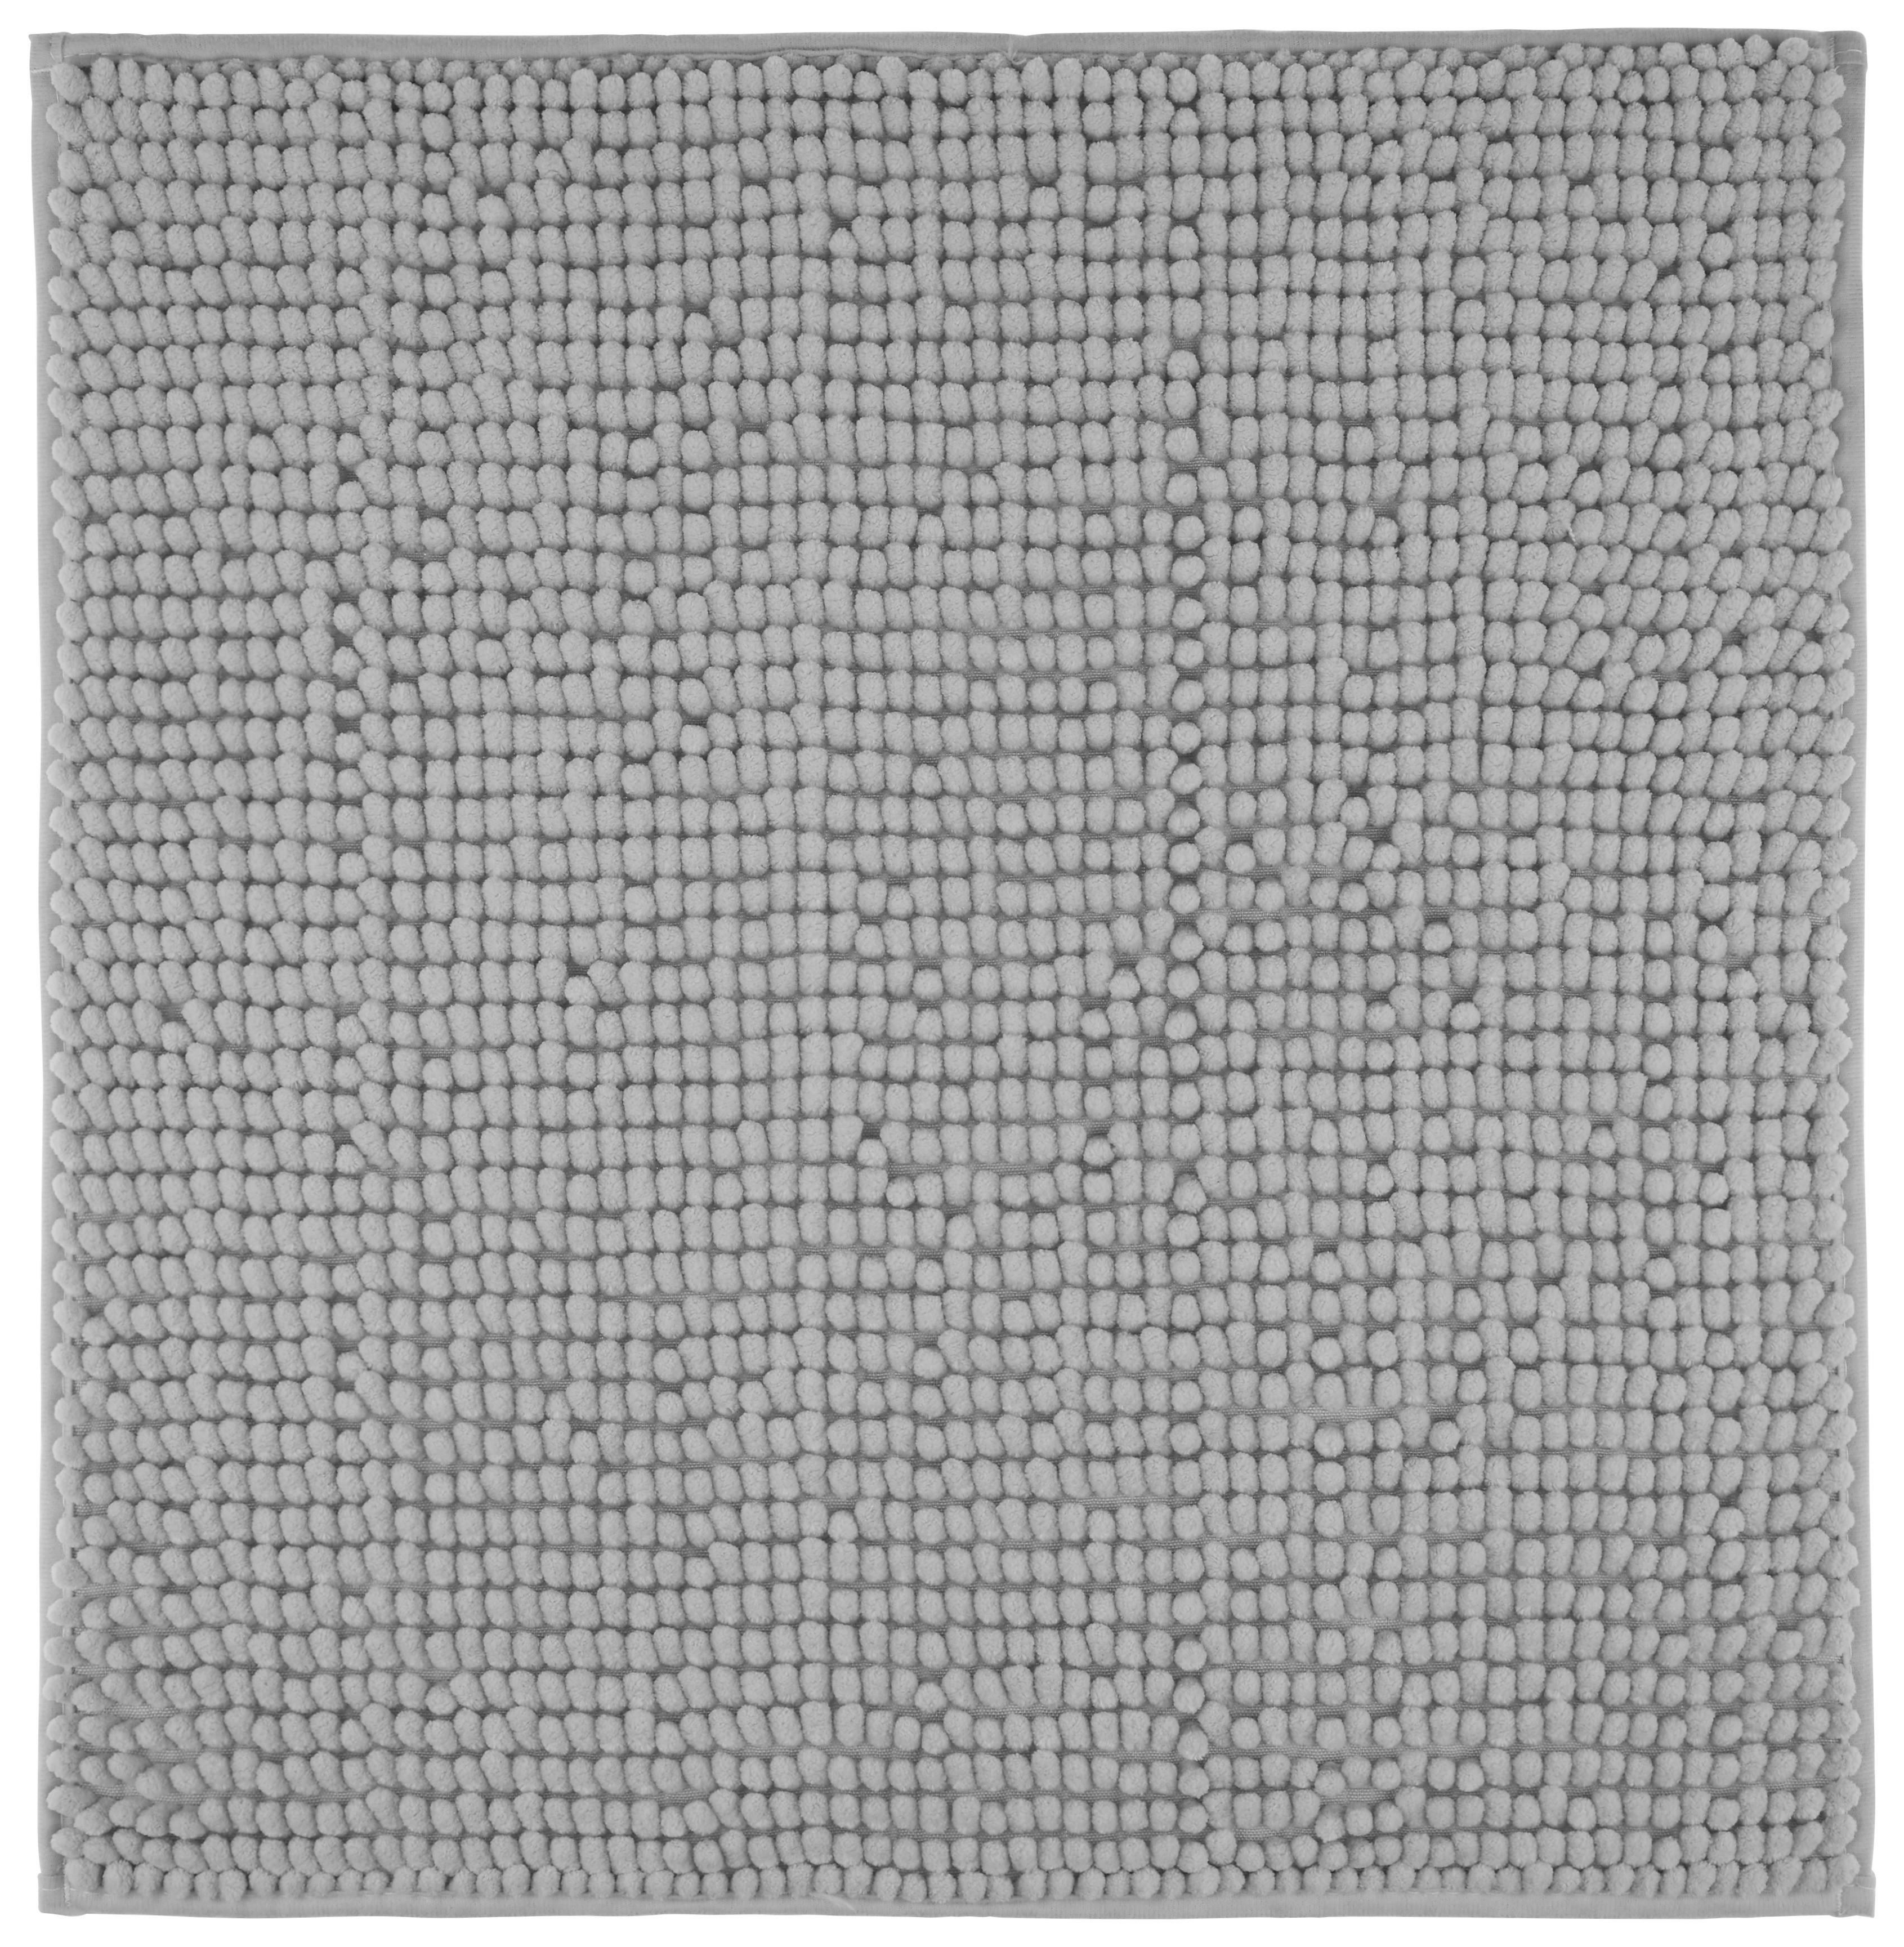 Badematte Nelly in Silber ca. 50x50cm - Silberfarben, Textil (50/50cm) - Modern Living